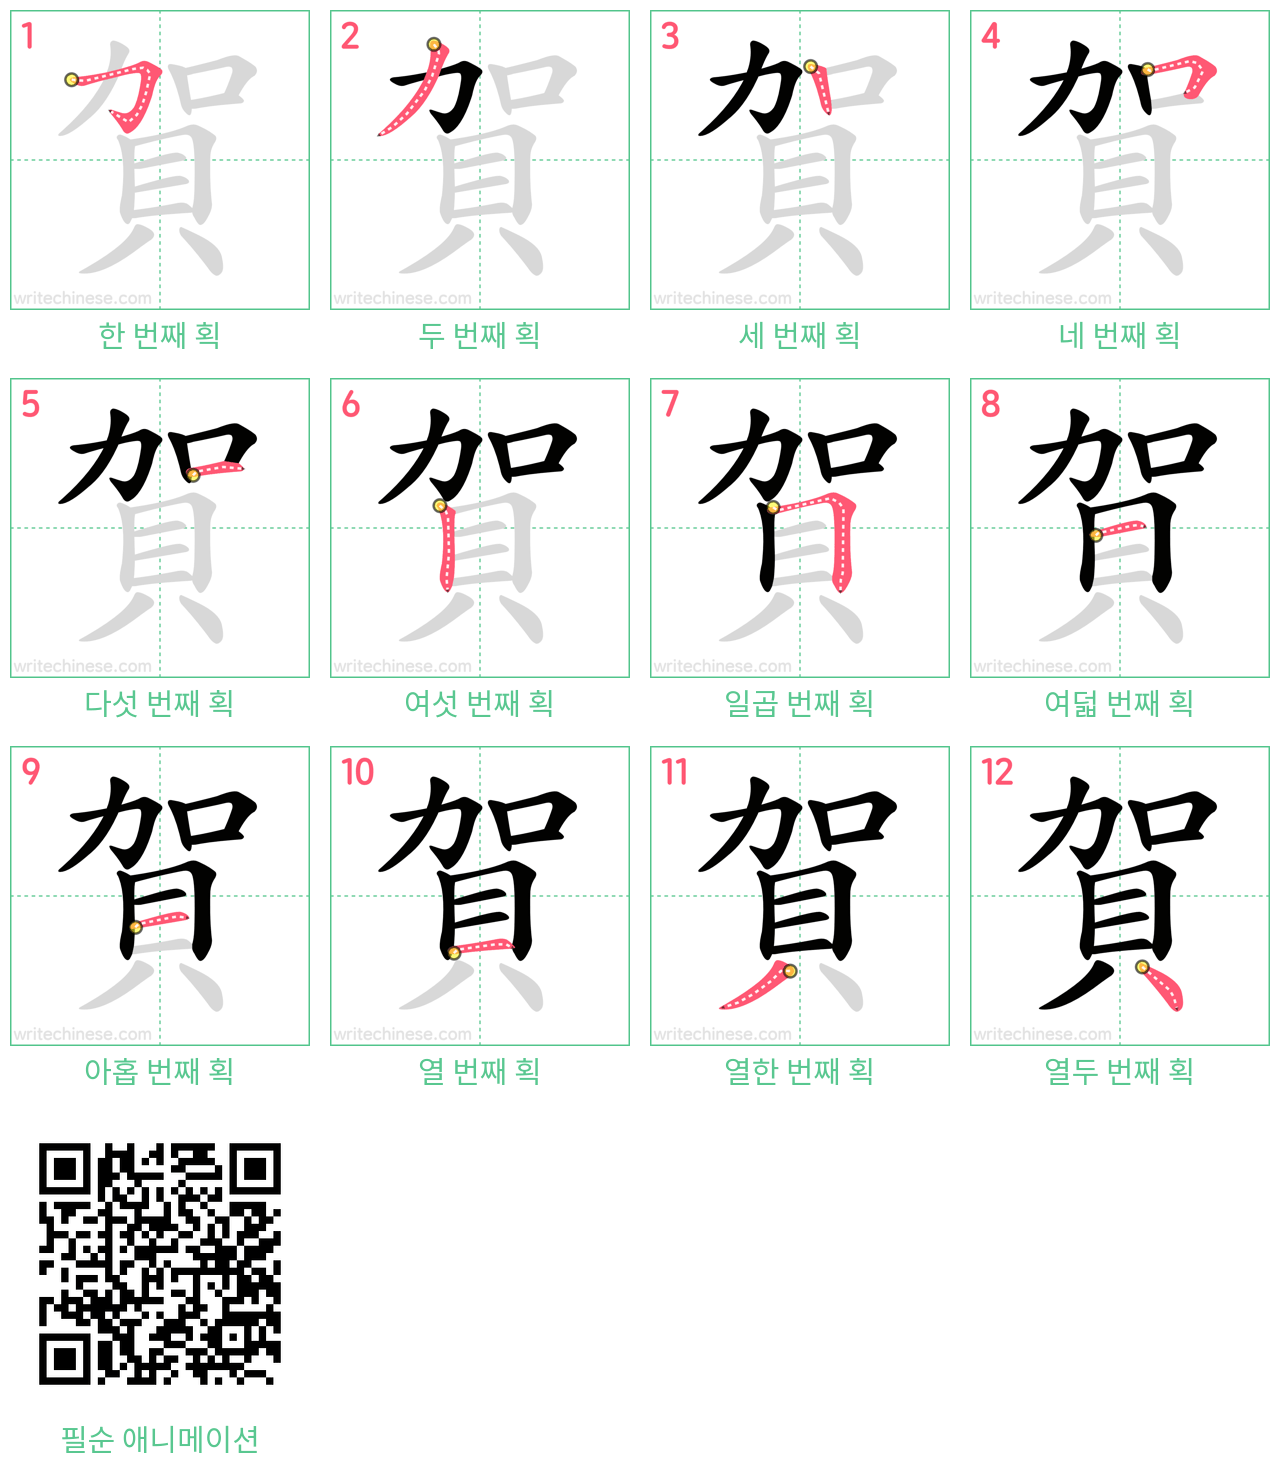 賀 step-by-step stroke order diagrams